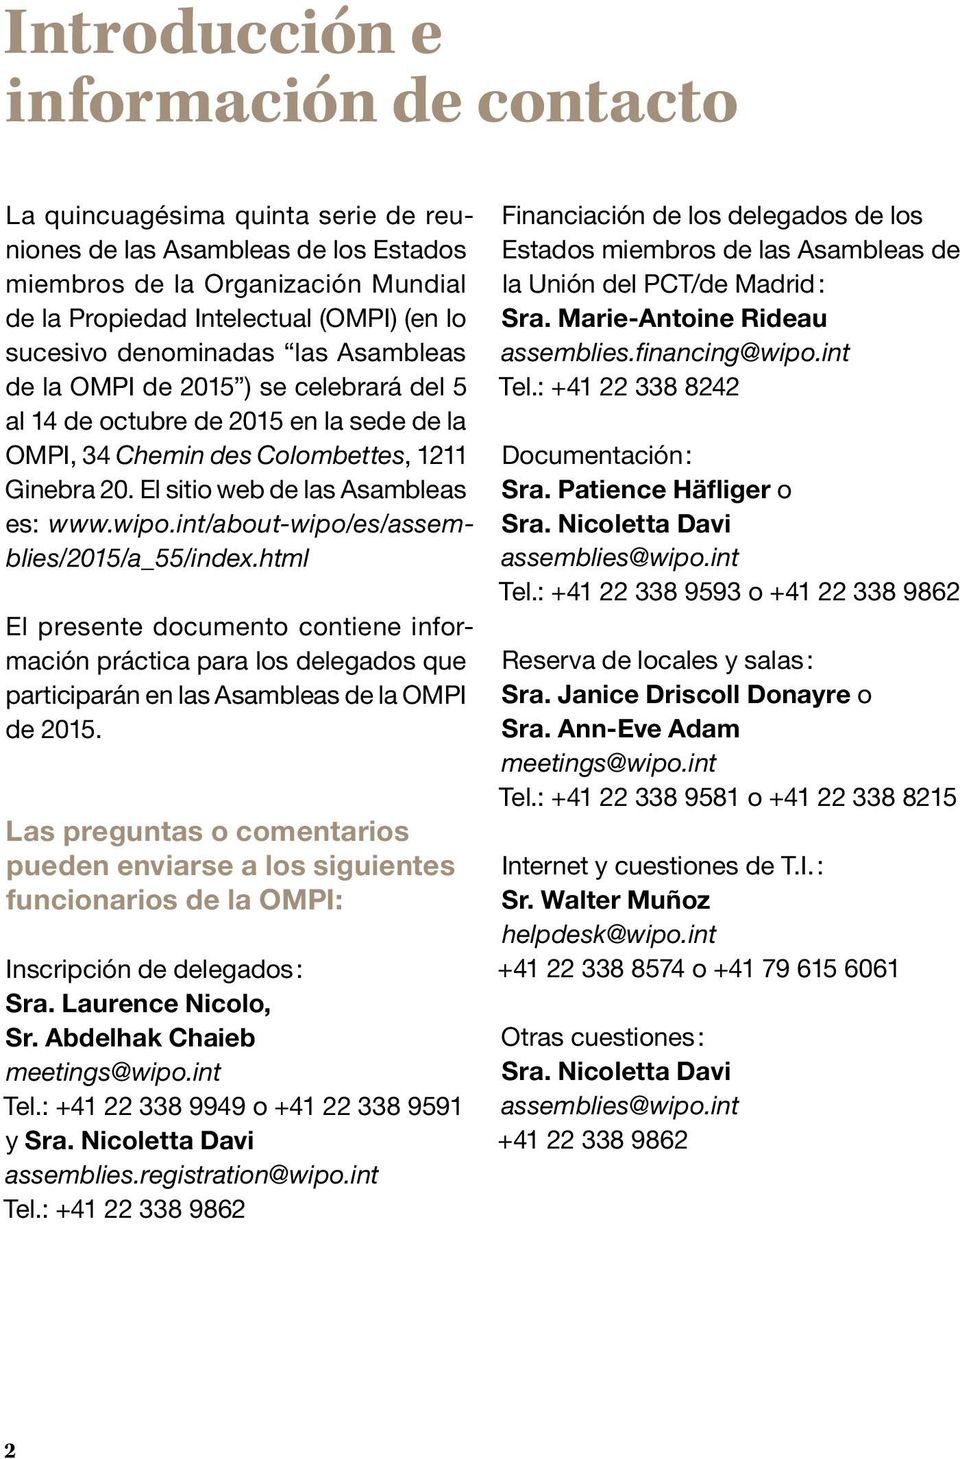 El sitio web de las Asambleas es: www.wipo.int/about-wipo/es/assemblies/2015/a_55/index.